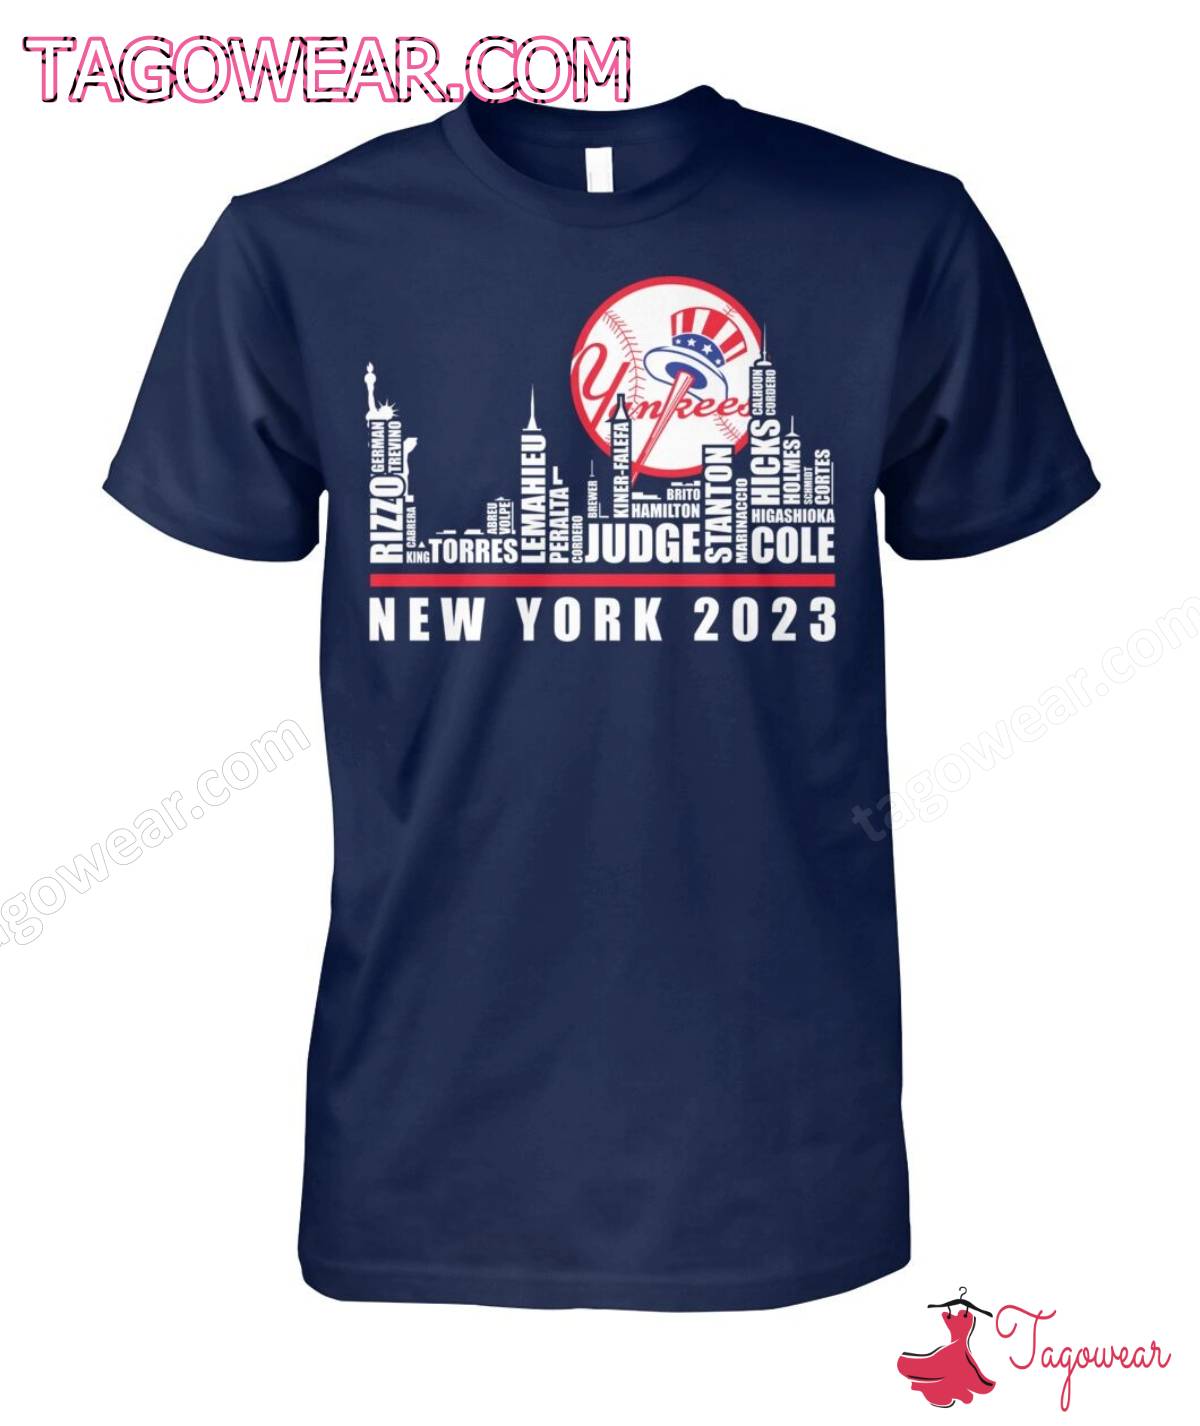 New York Yankees Players New York 2023 City Shirt